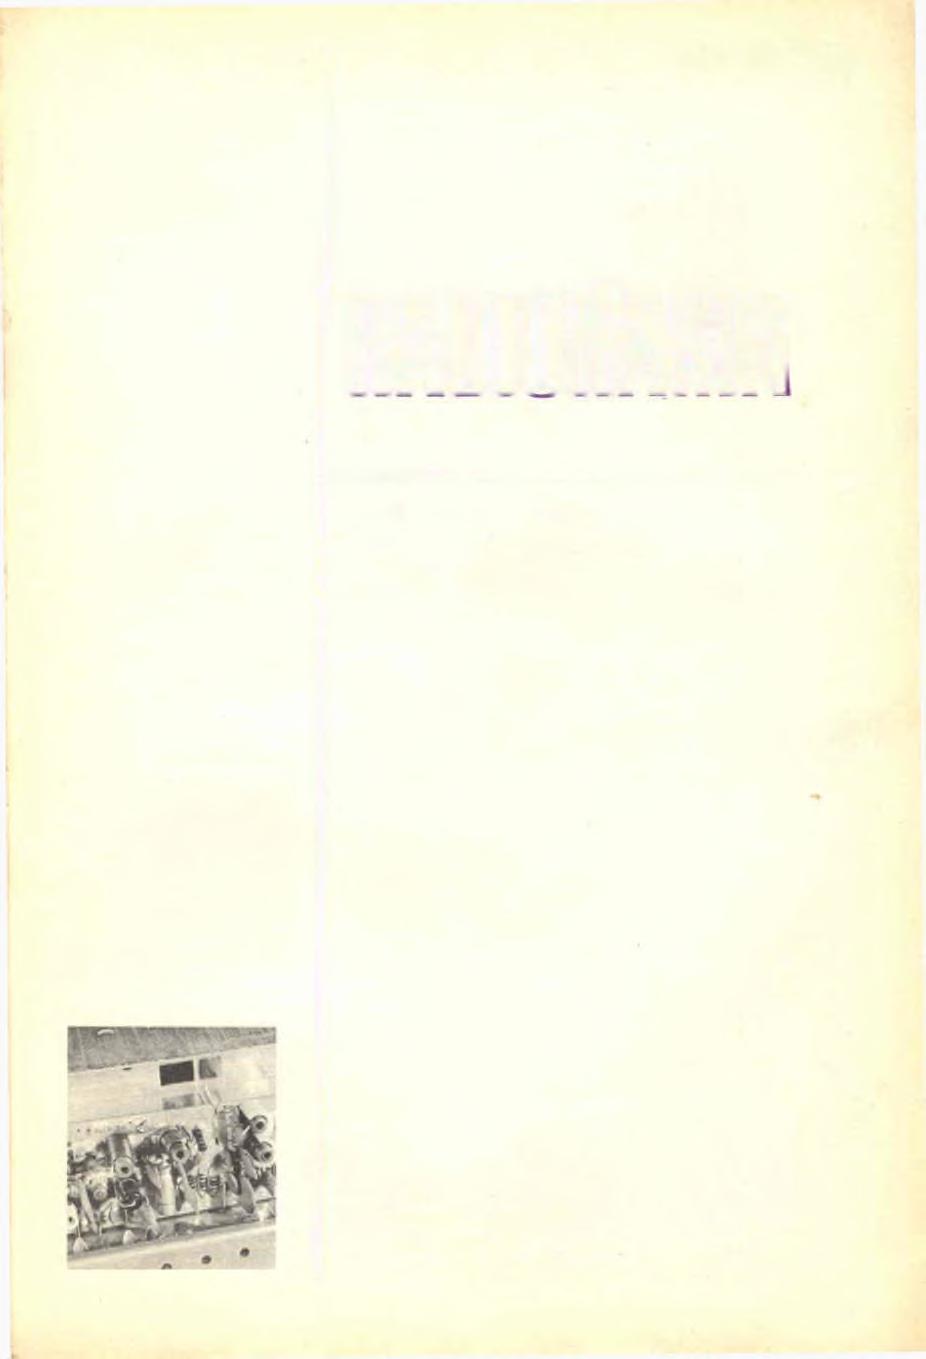 GENNAIO 1973 RADIORAMA - Anno XVIII - N 1. Gennaio 1973 - Spedizione in abbonamento postale - Gruppo III Prezzo del fascicolo L.